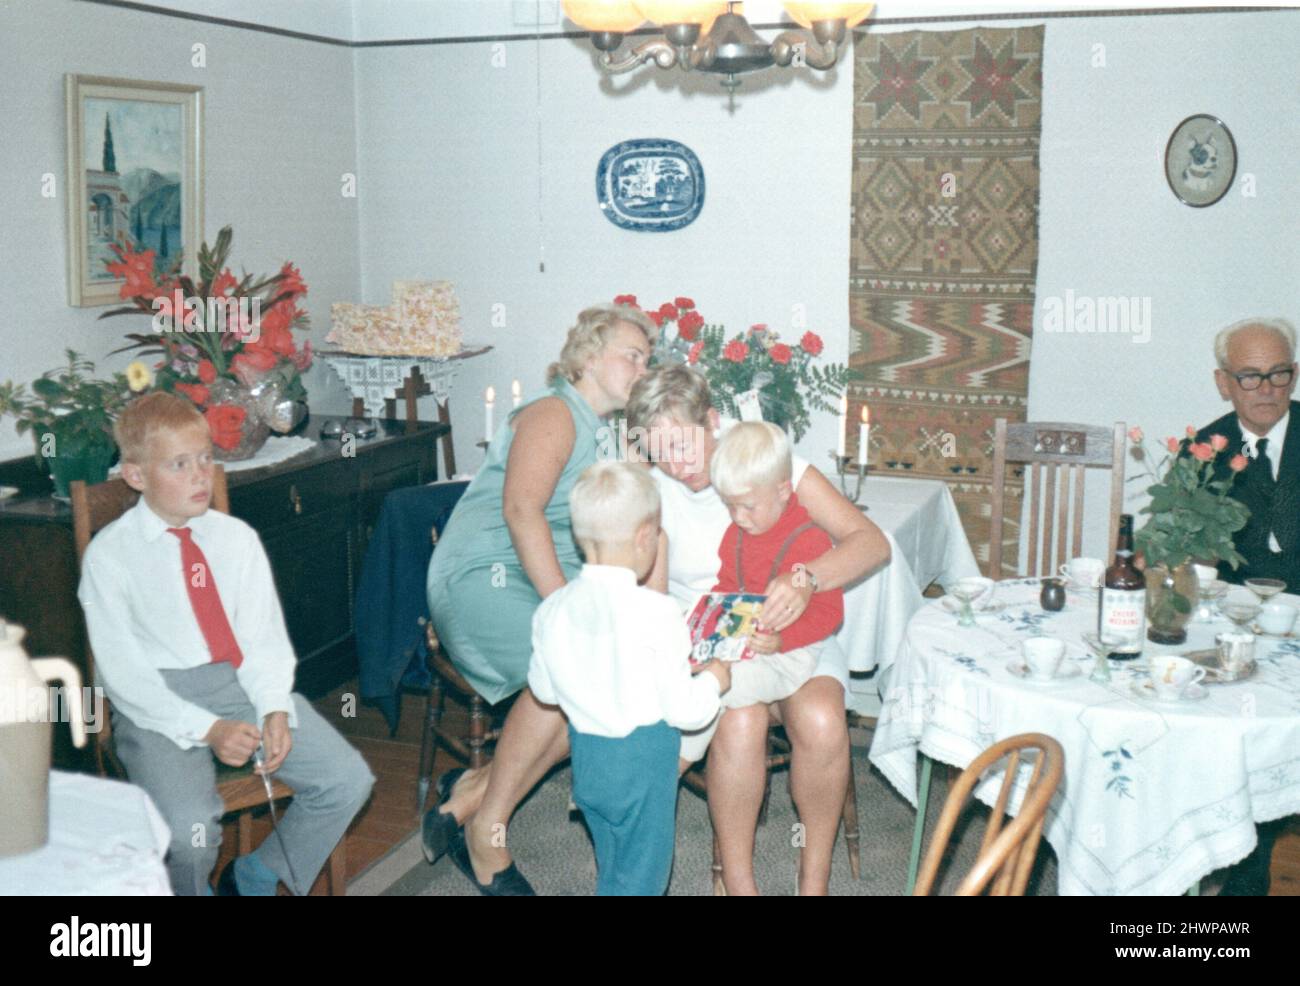 Fotografía original de los años 70 de la familia sueca elegantemente vestida en interiores, Suecia. Concepto de unión, antaño, nostalgia Foto de stock